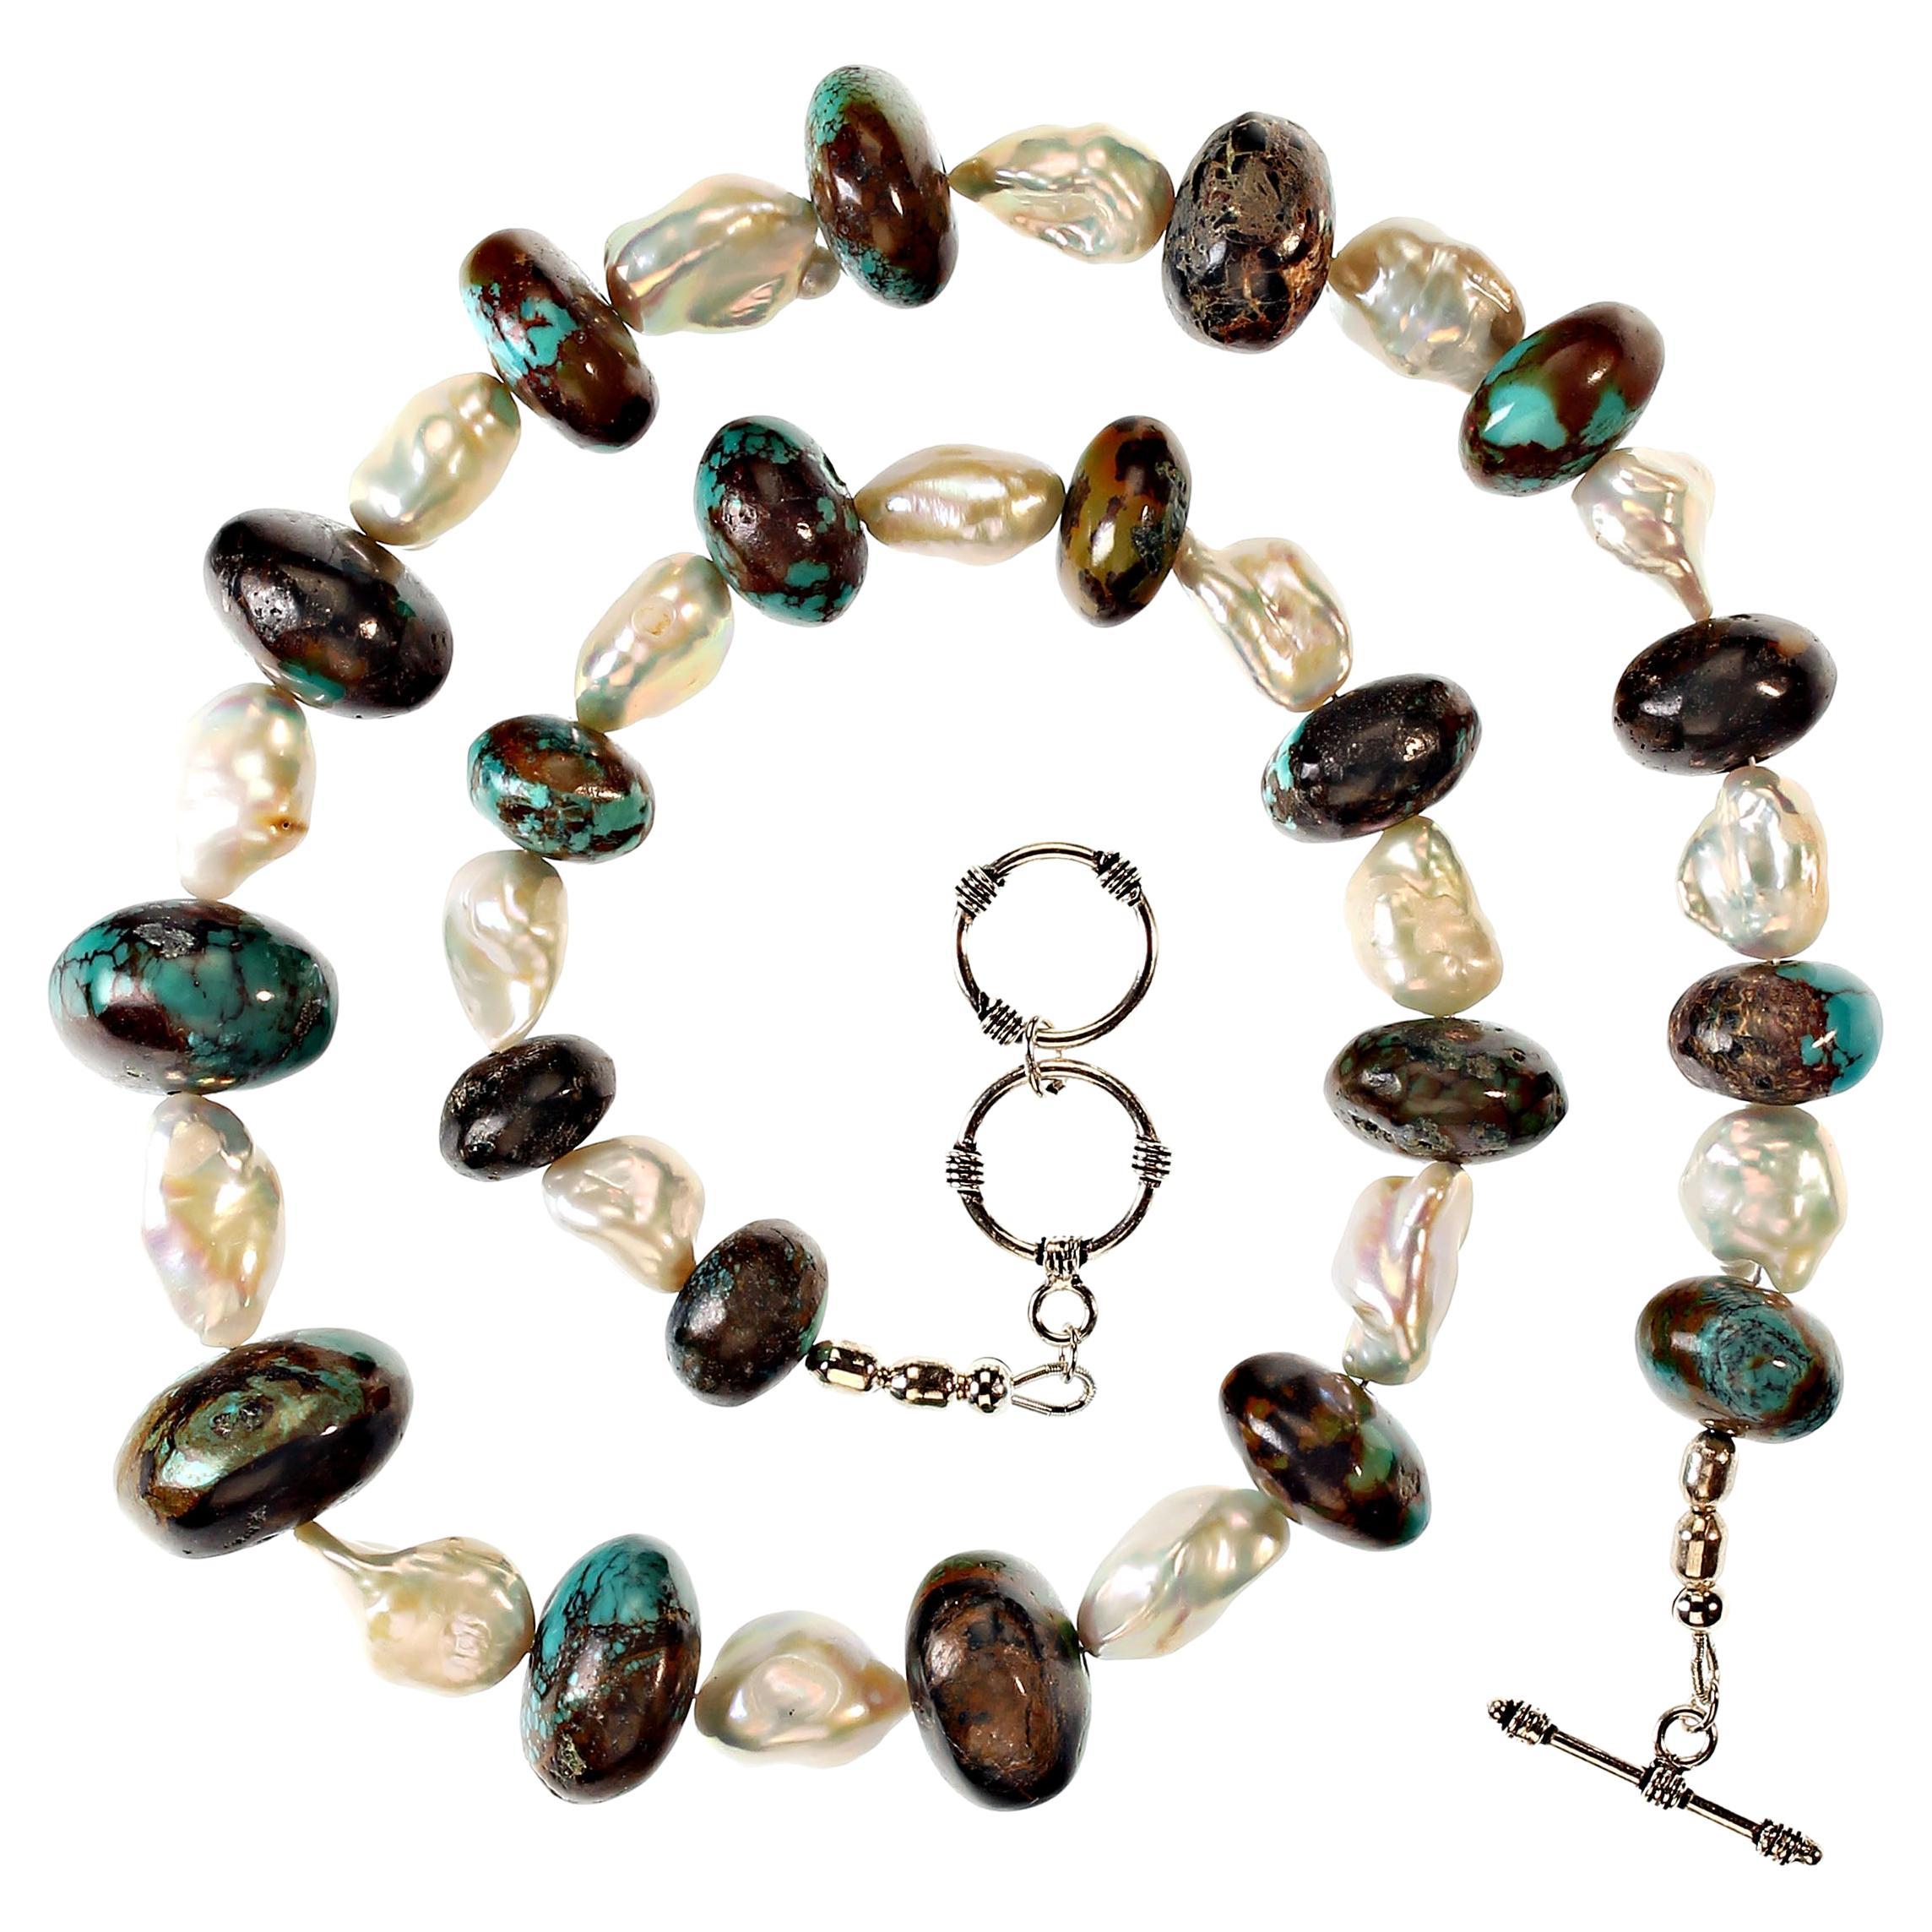 22-Zoll-Halskette aus abgestuften runden Rondellen aus Hubei-Türkis (bis zu 23 mm), gemischt mit weißen Süßwasserperlen. Die Perlen haben einen herrlichen Glanz mit rosa und blauen Reflexen. Die Kette ist mit einem versilberten Verschluss mit zwei